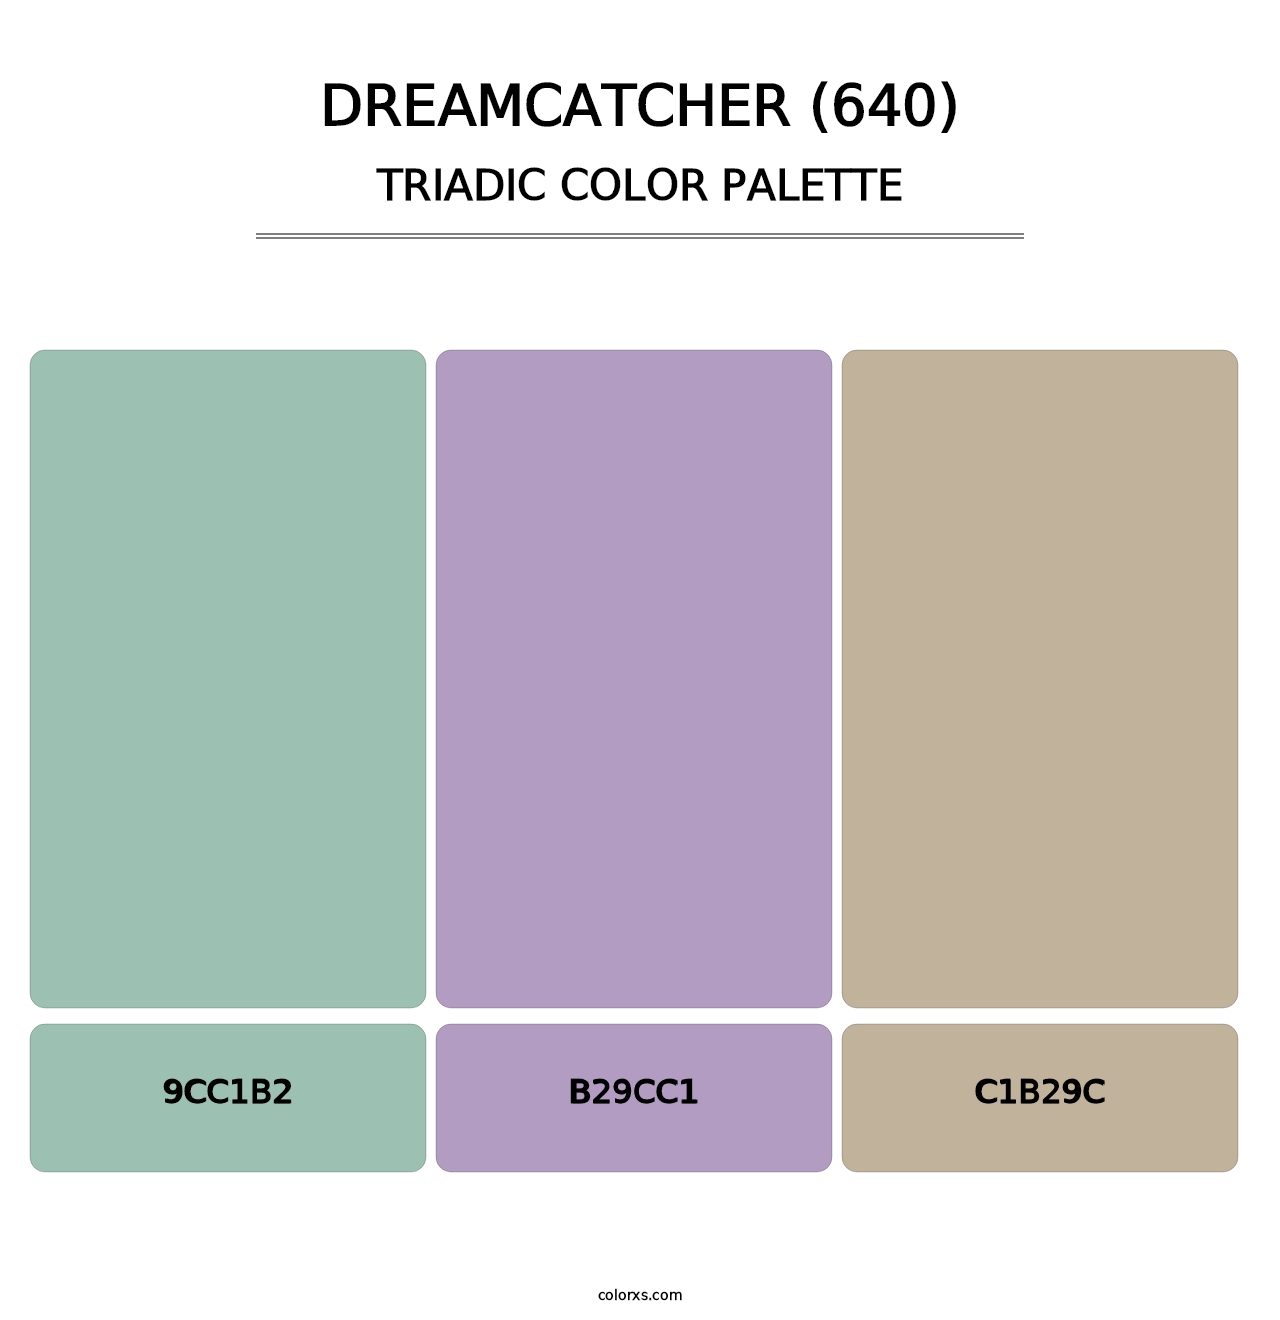 Dreamcatcher (640) - Triadic Color Palette